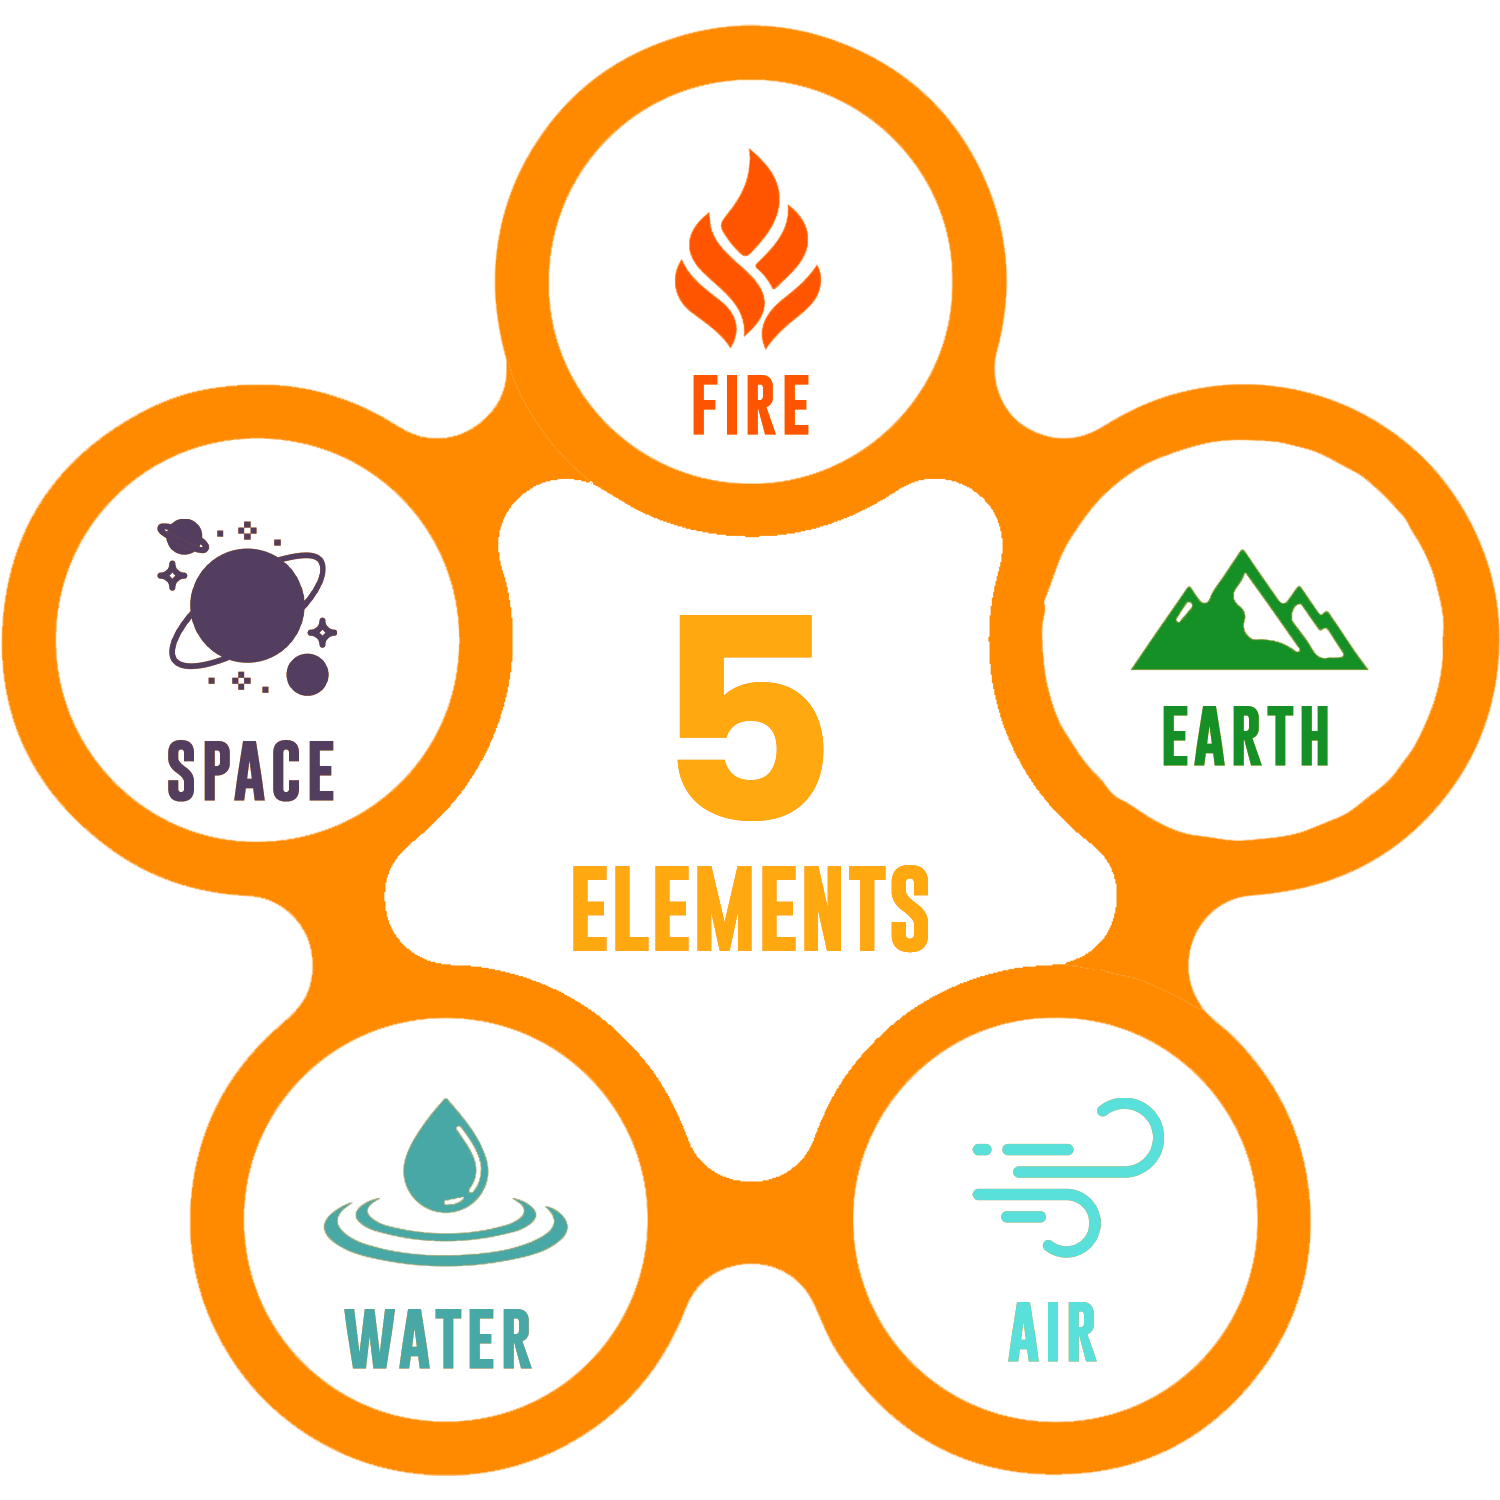 5 elements images